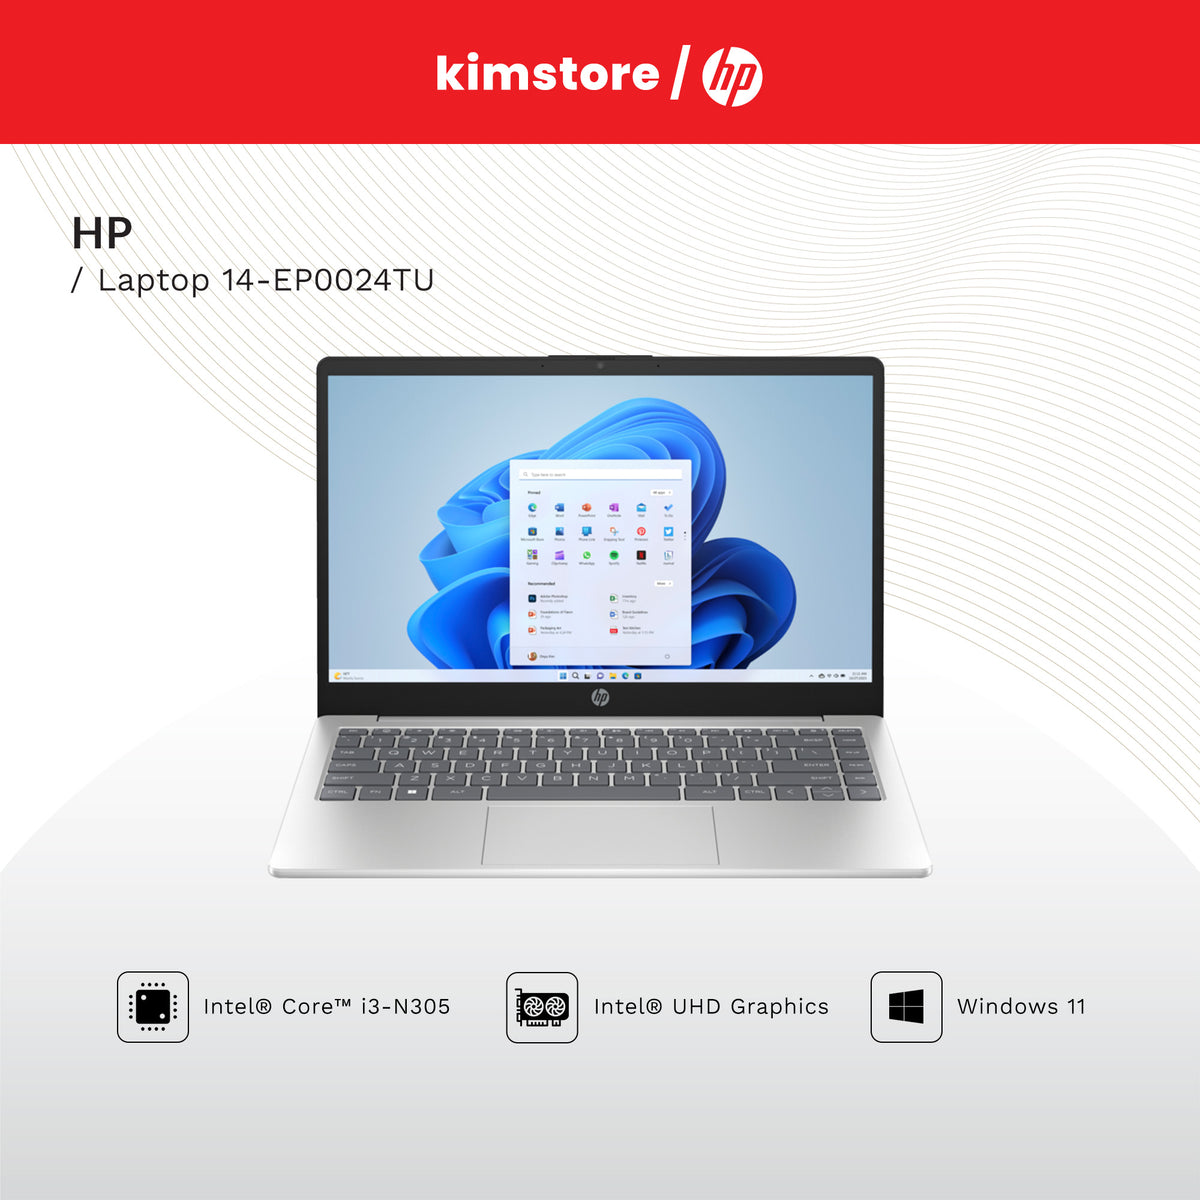 HP Laptop 14-EP0024TU